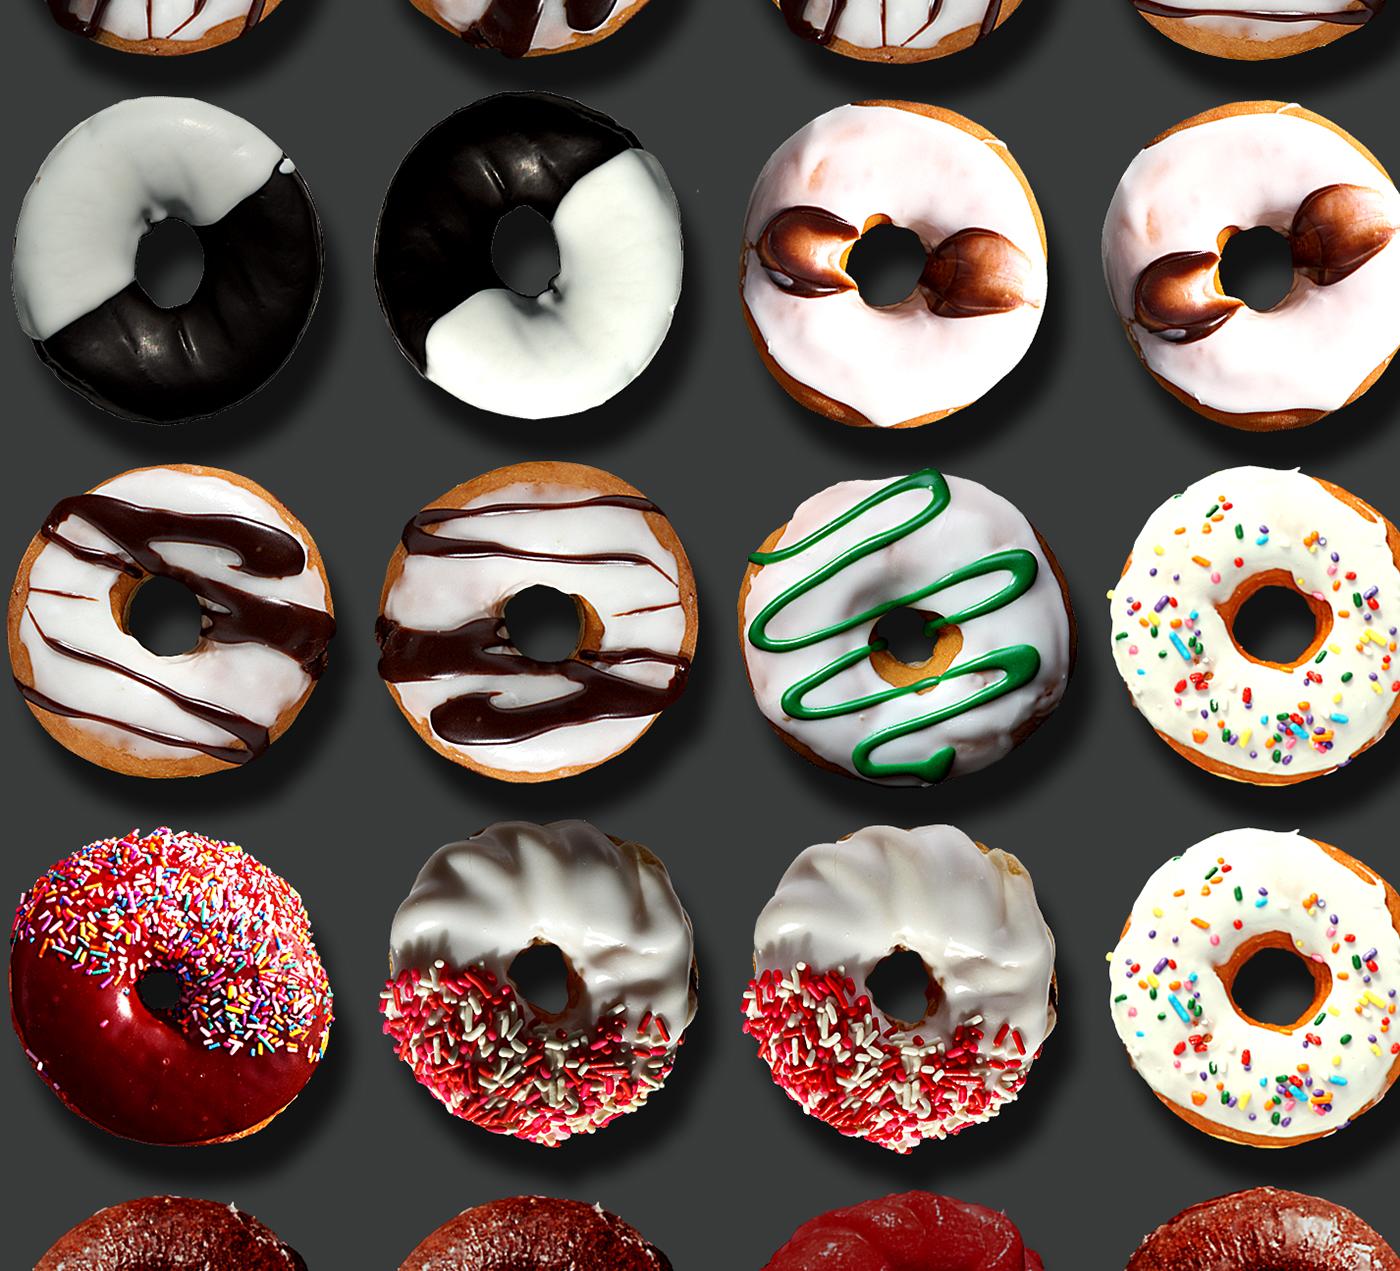 Sie haben in den sozialen Medien weltweit von den außergewöhnlichen Donut-Porträts von Candice CMC gelesen, und wir sind begeistert und stolz, ihre Arbeit zu vertreten.  Ich habe in diese Auflistung ein Bild aus dem weltweiten Social Media Buzz über